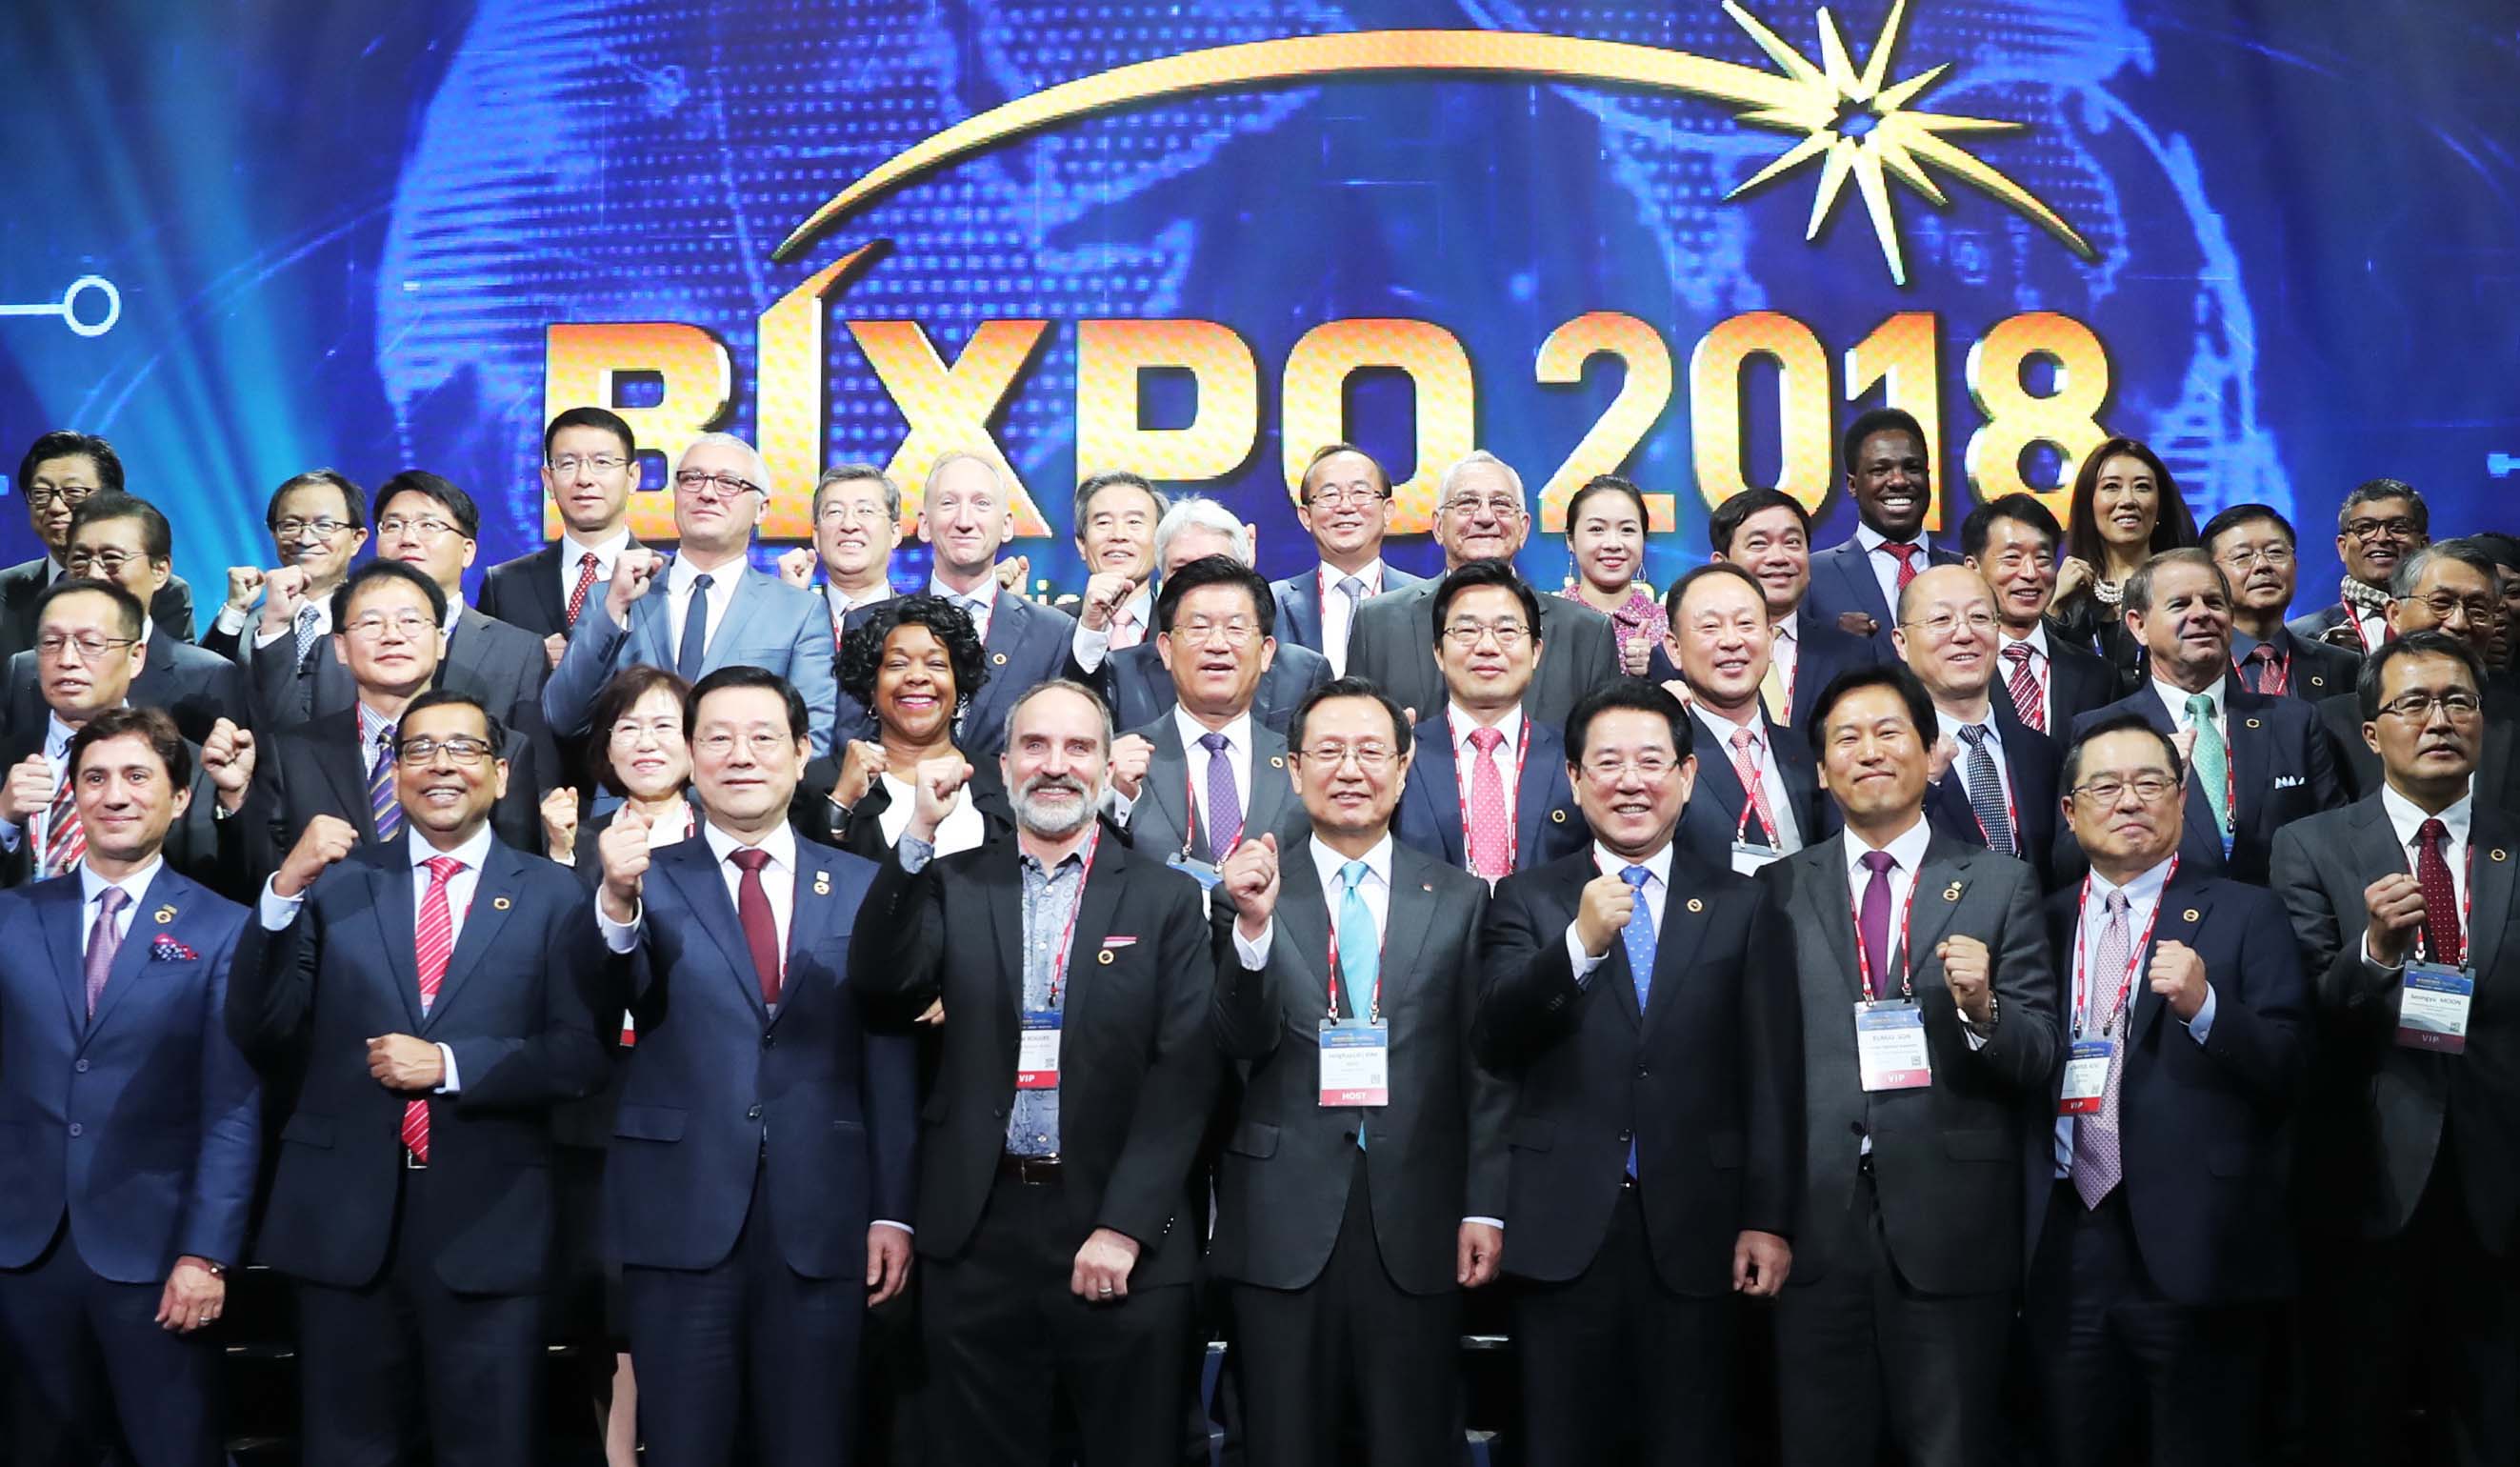 2018 빛가람 국제 전력기술 엑스포(BIXPO 2018)2